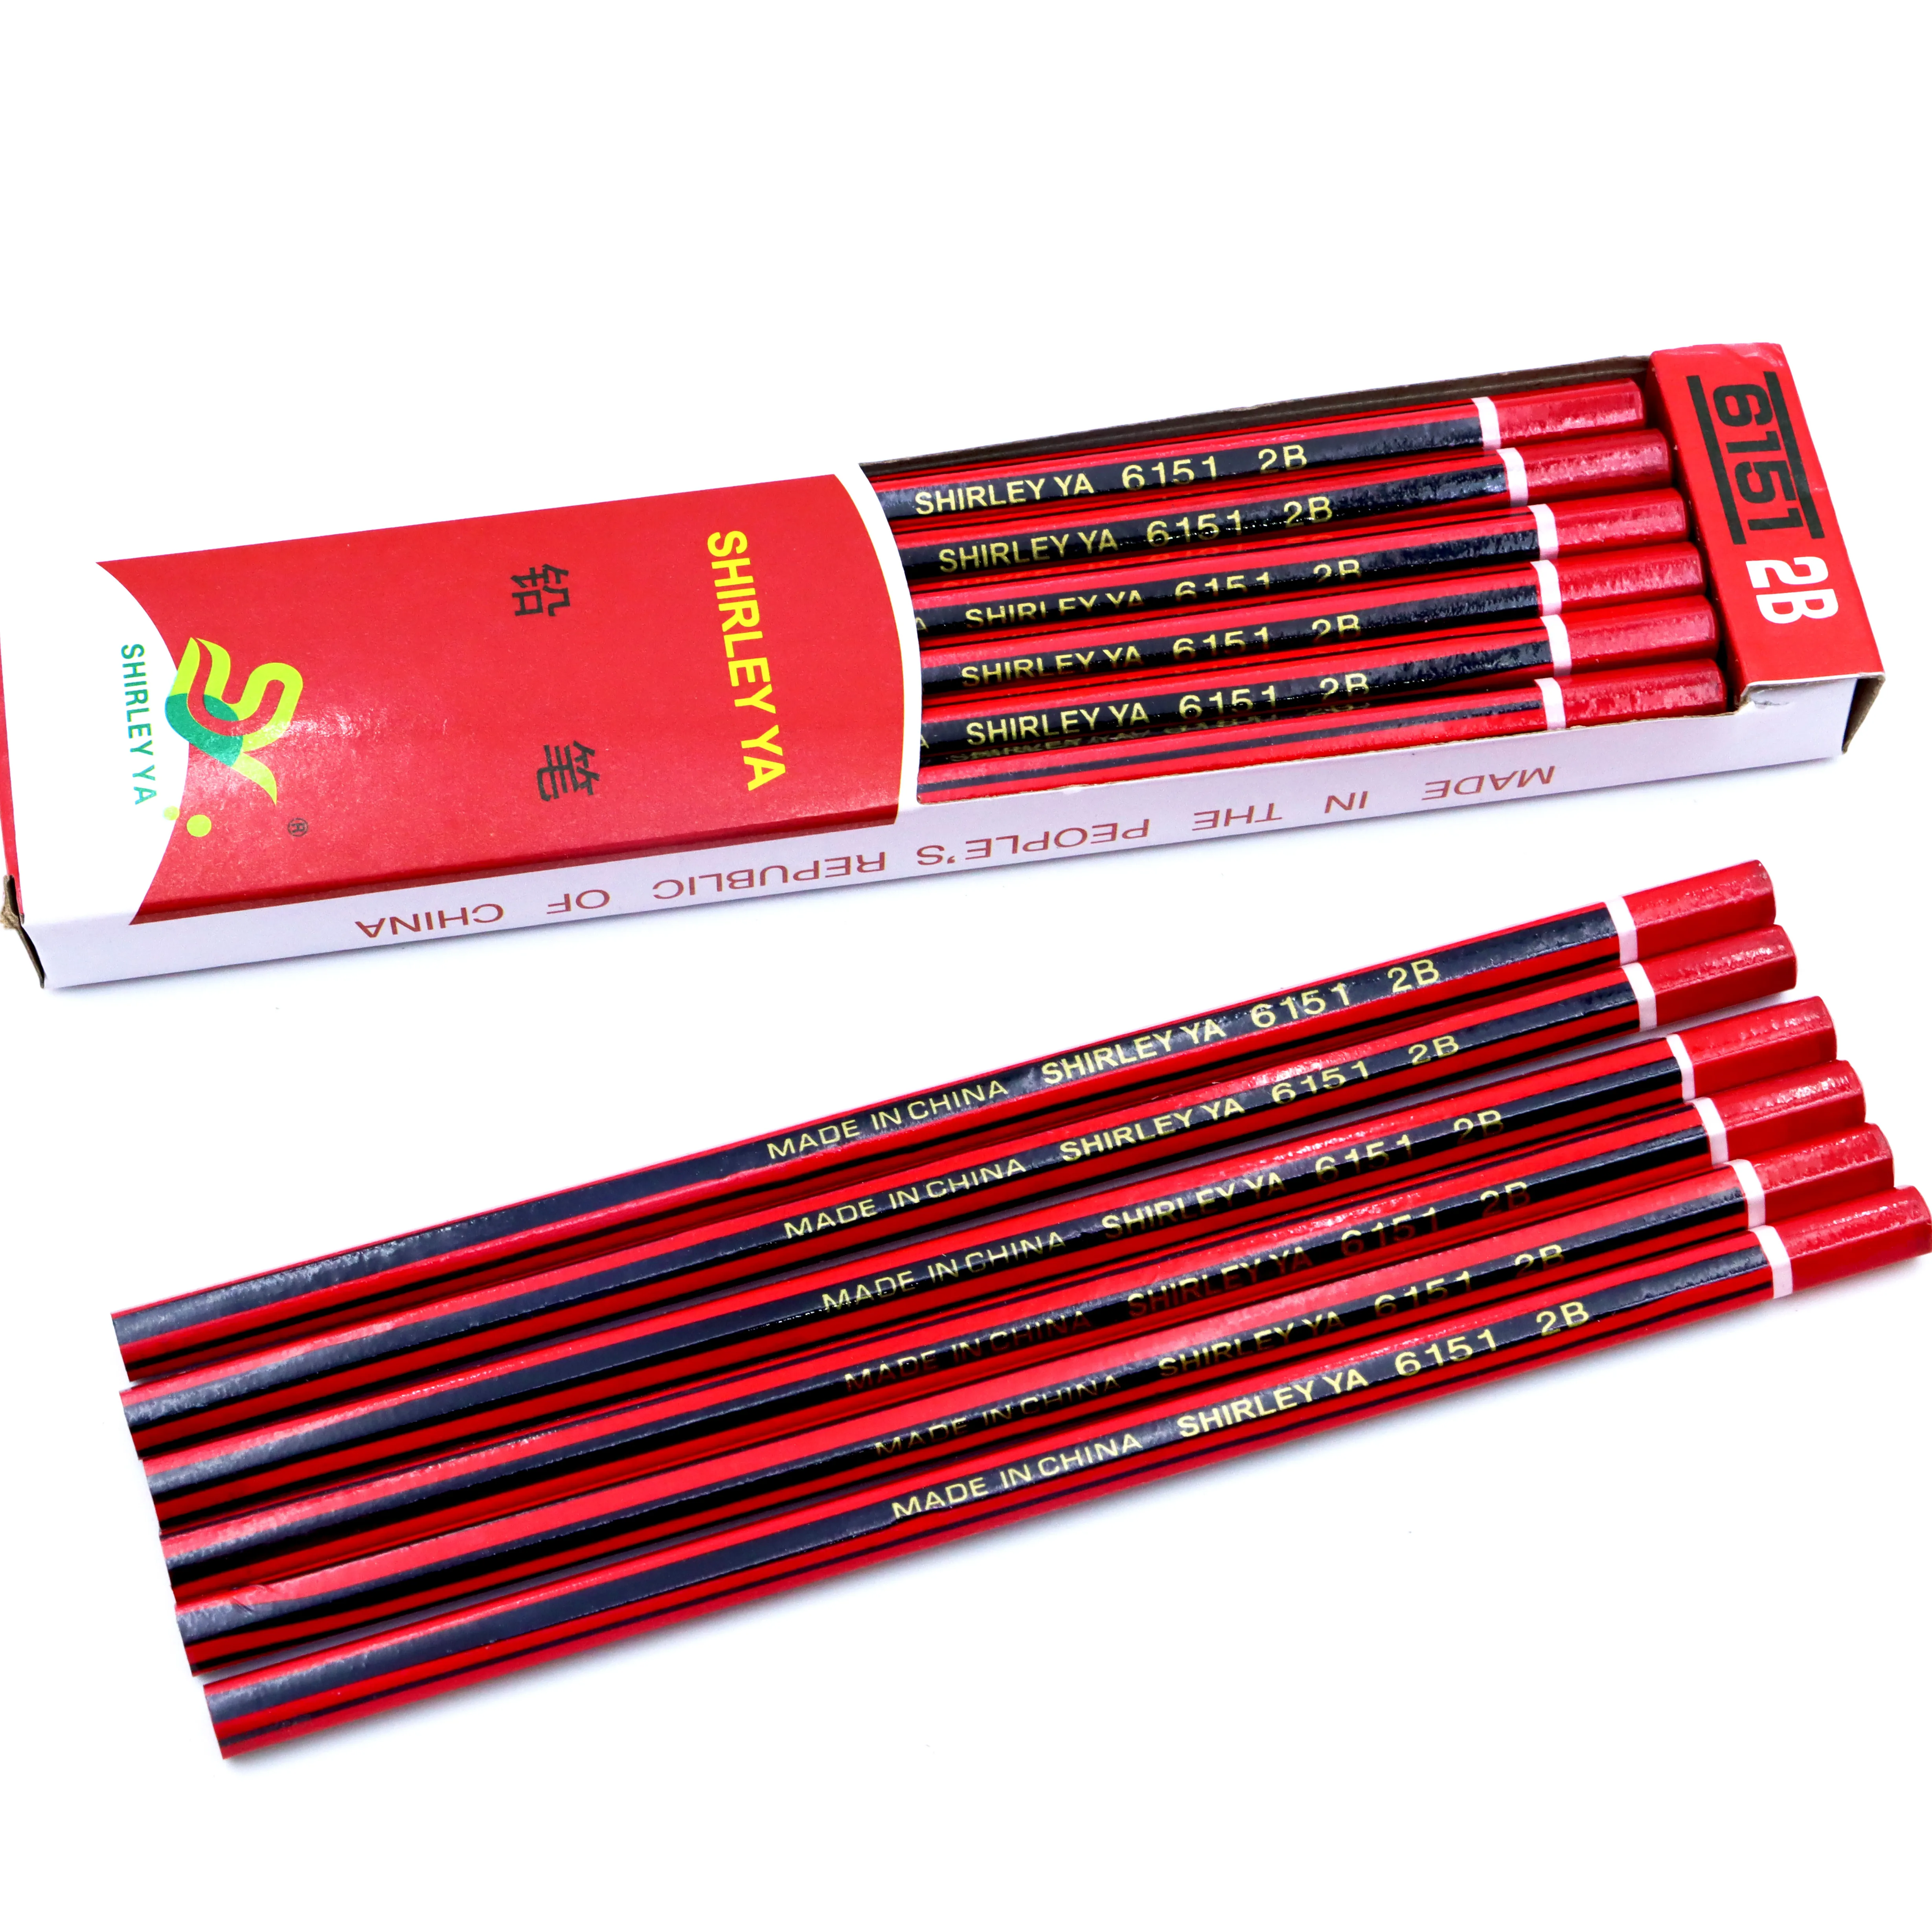 इरेज़र स्कूल स्टेशनरी ब्लैक वुड फैंसी सेट फैक्ट्री के साथ एचबी पेंसिल कम कीमत उच्च गुणवत्ता वाले प्लास्टिक गोल लकड़ी के आधुनिक सीएन;जेडएचई